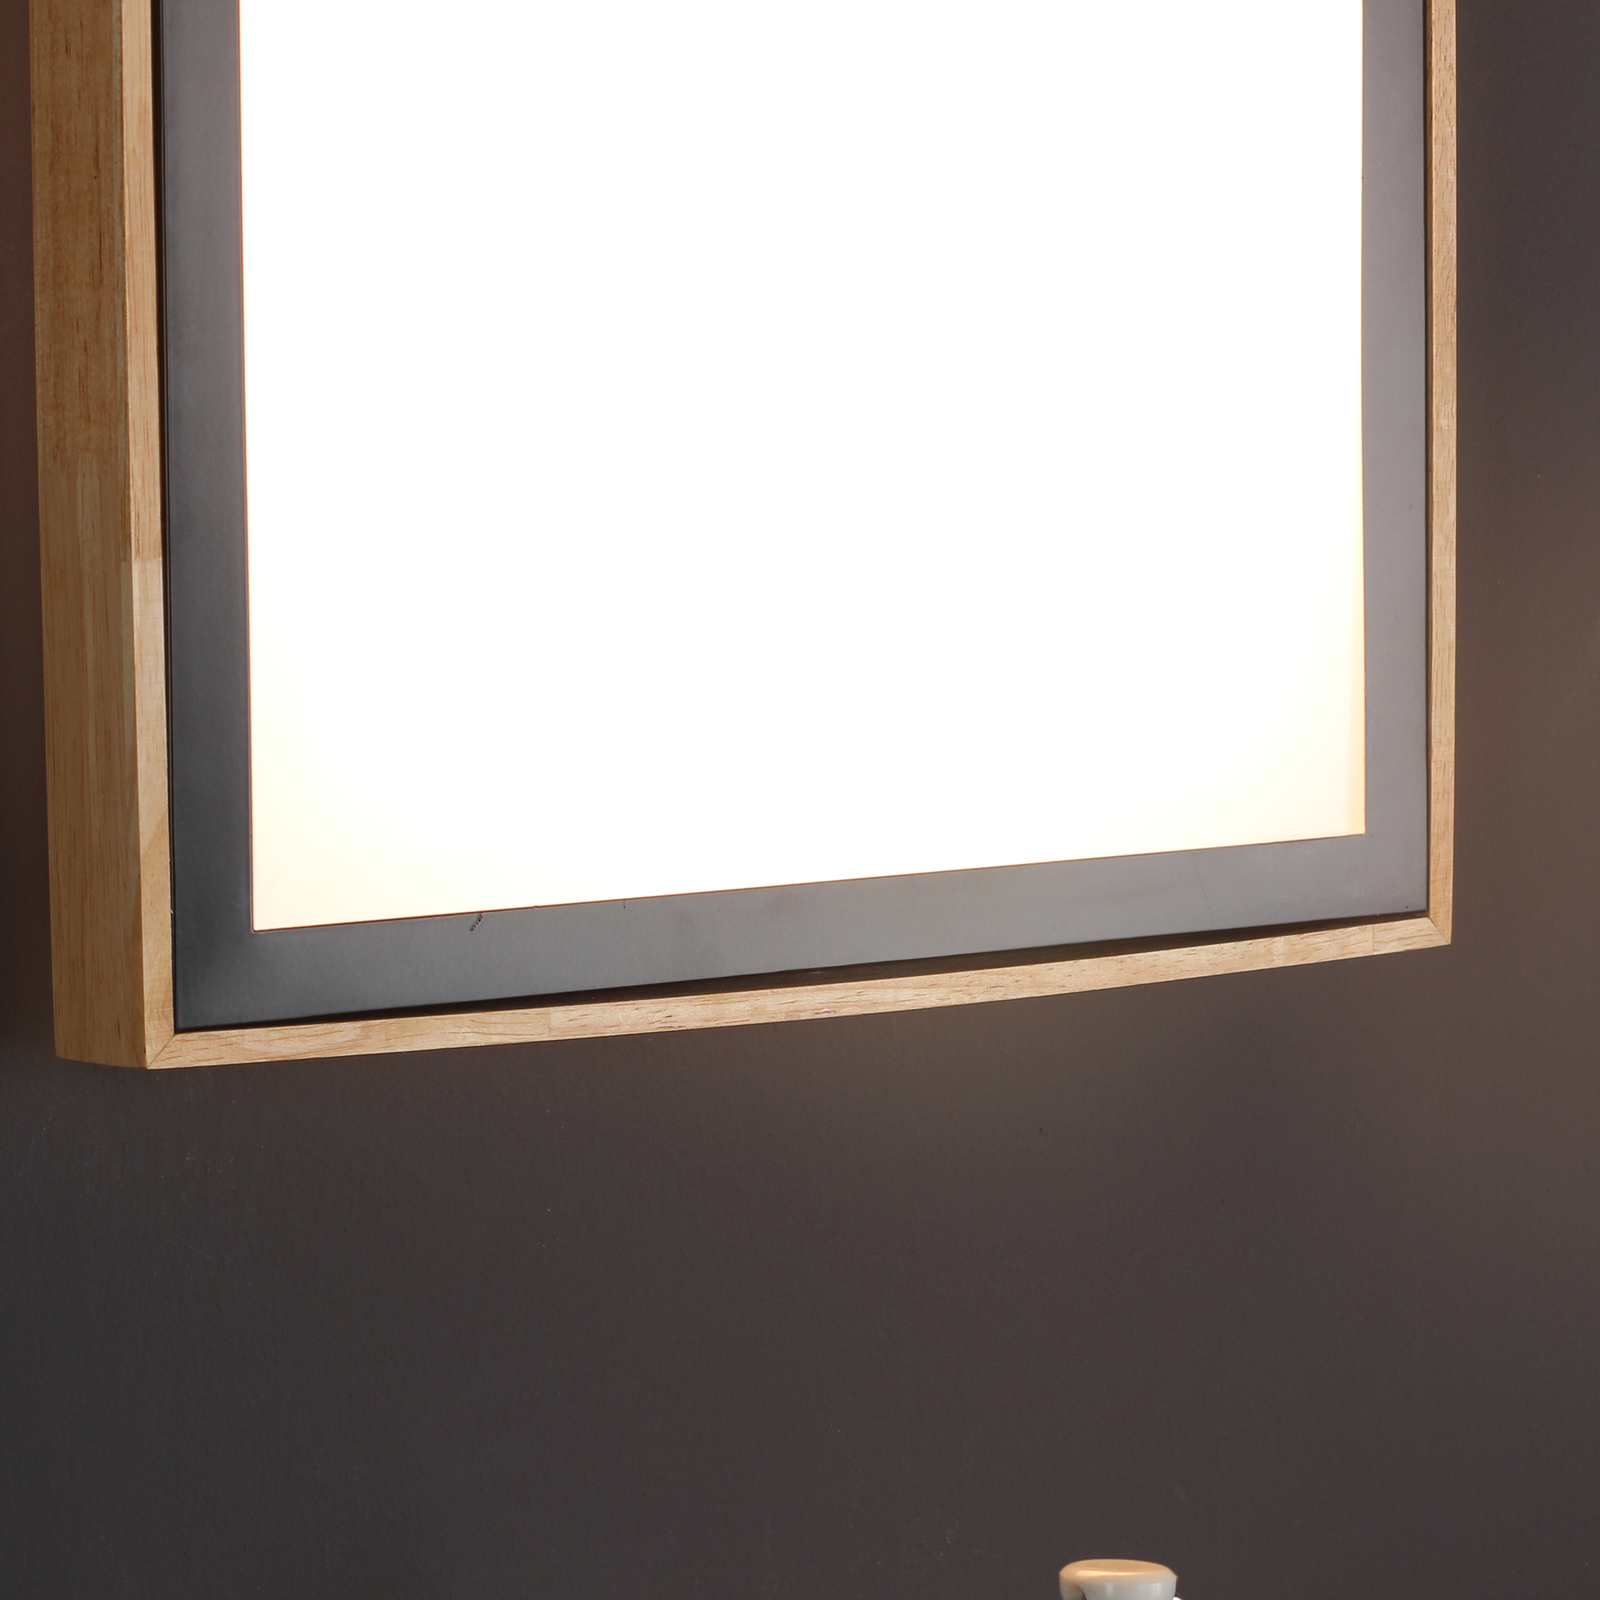 Stropné LED svetlo Solstar hranaté, 39 x 39 cm